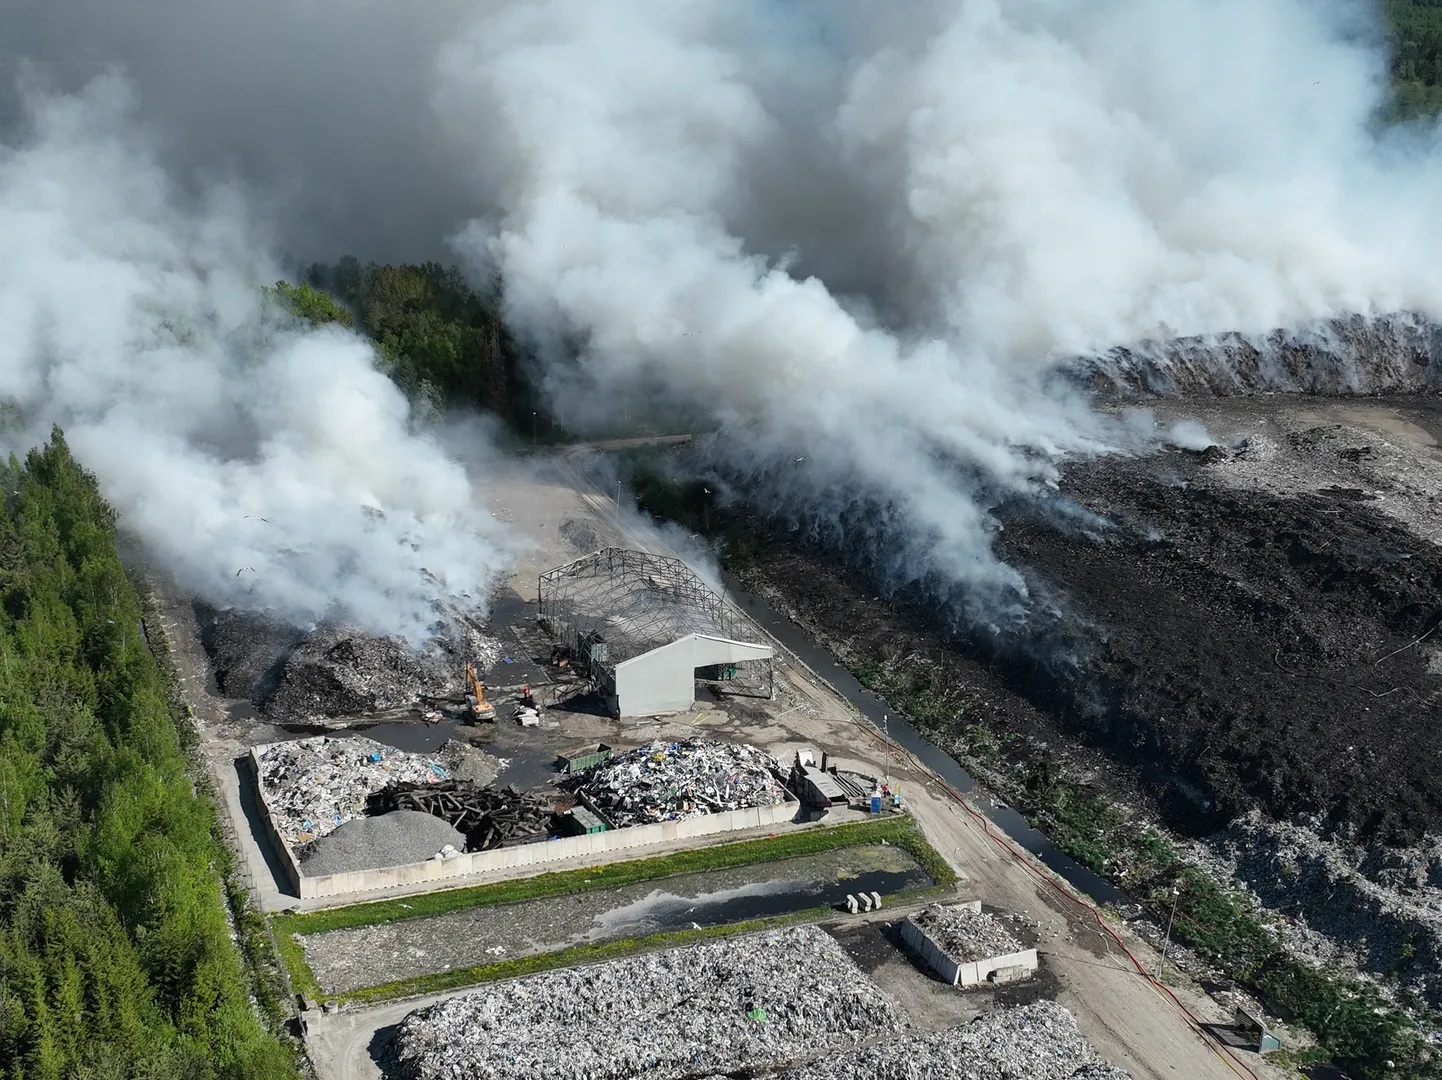 Пожар в Уйкала начался вечером 22 мая и в момент его пика огонь охватил на горе отходов 30-метровой высоты площадь в 4,2 гектара.